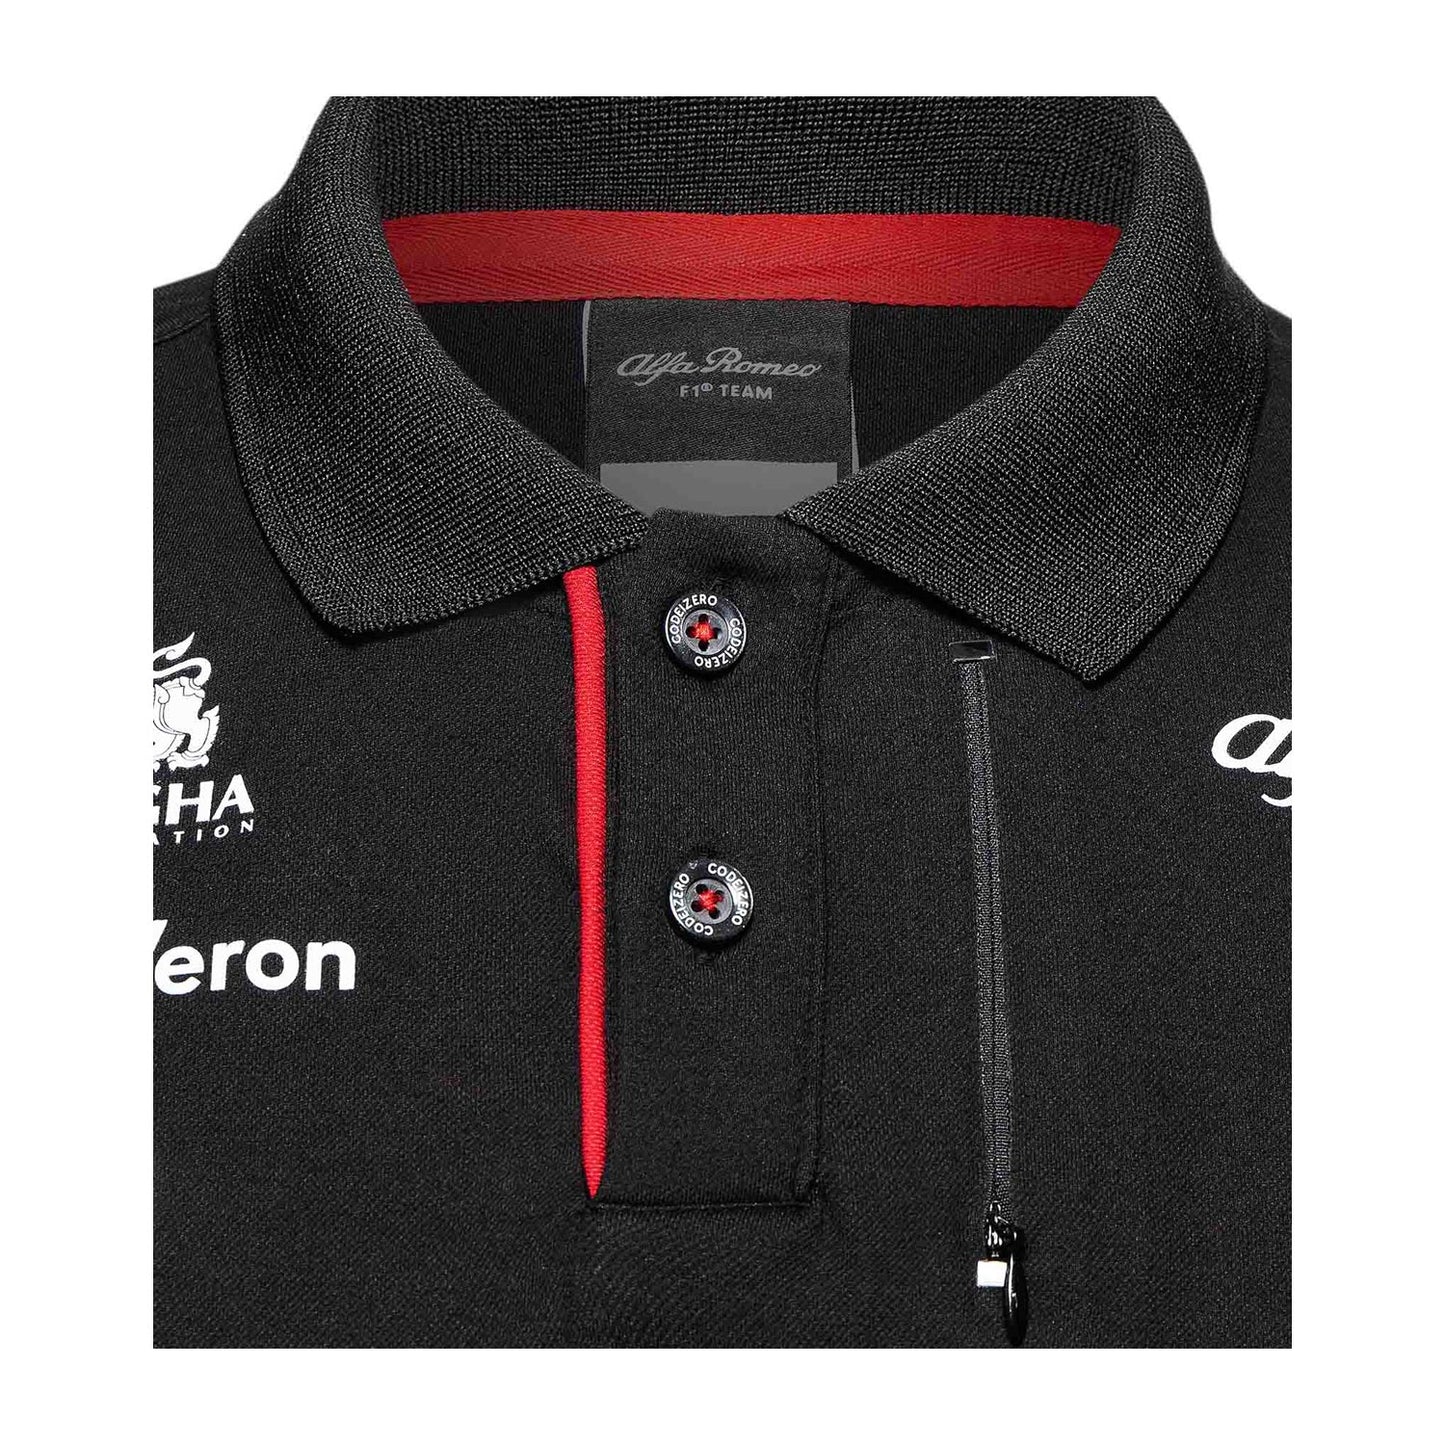 2023 Alfa Romeo Italy F1 Mens Team Polo Shirt